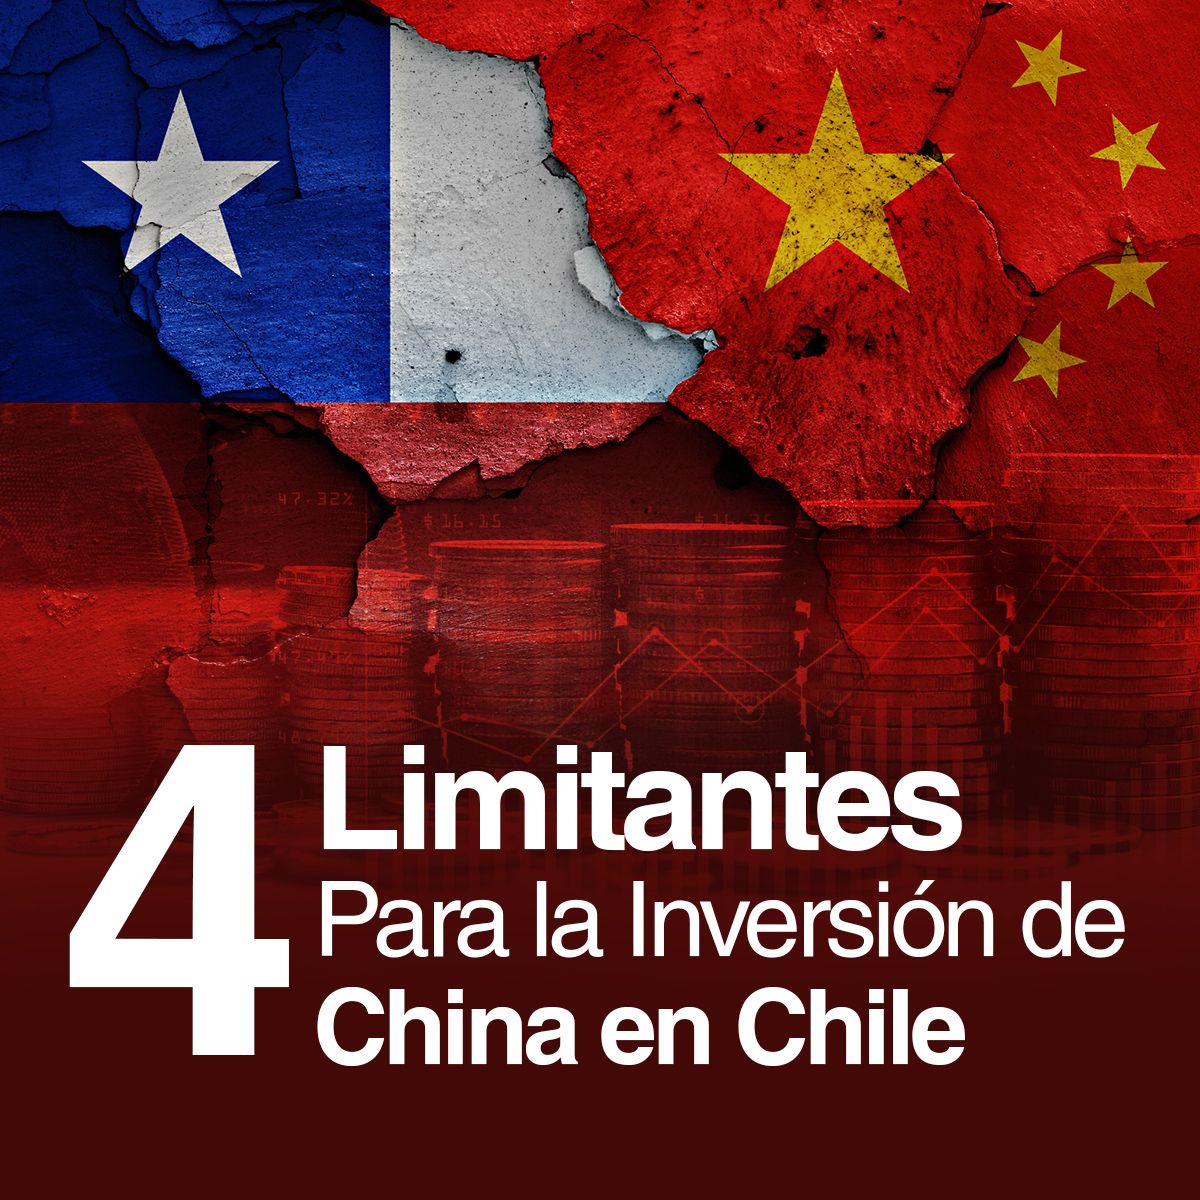 4 Limitantes Para la Inversión de China en Chile